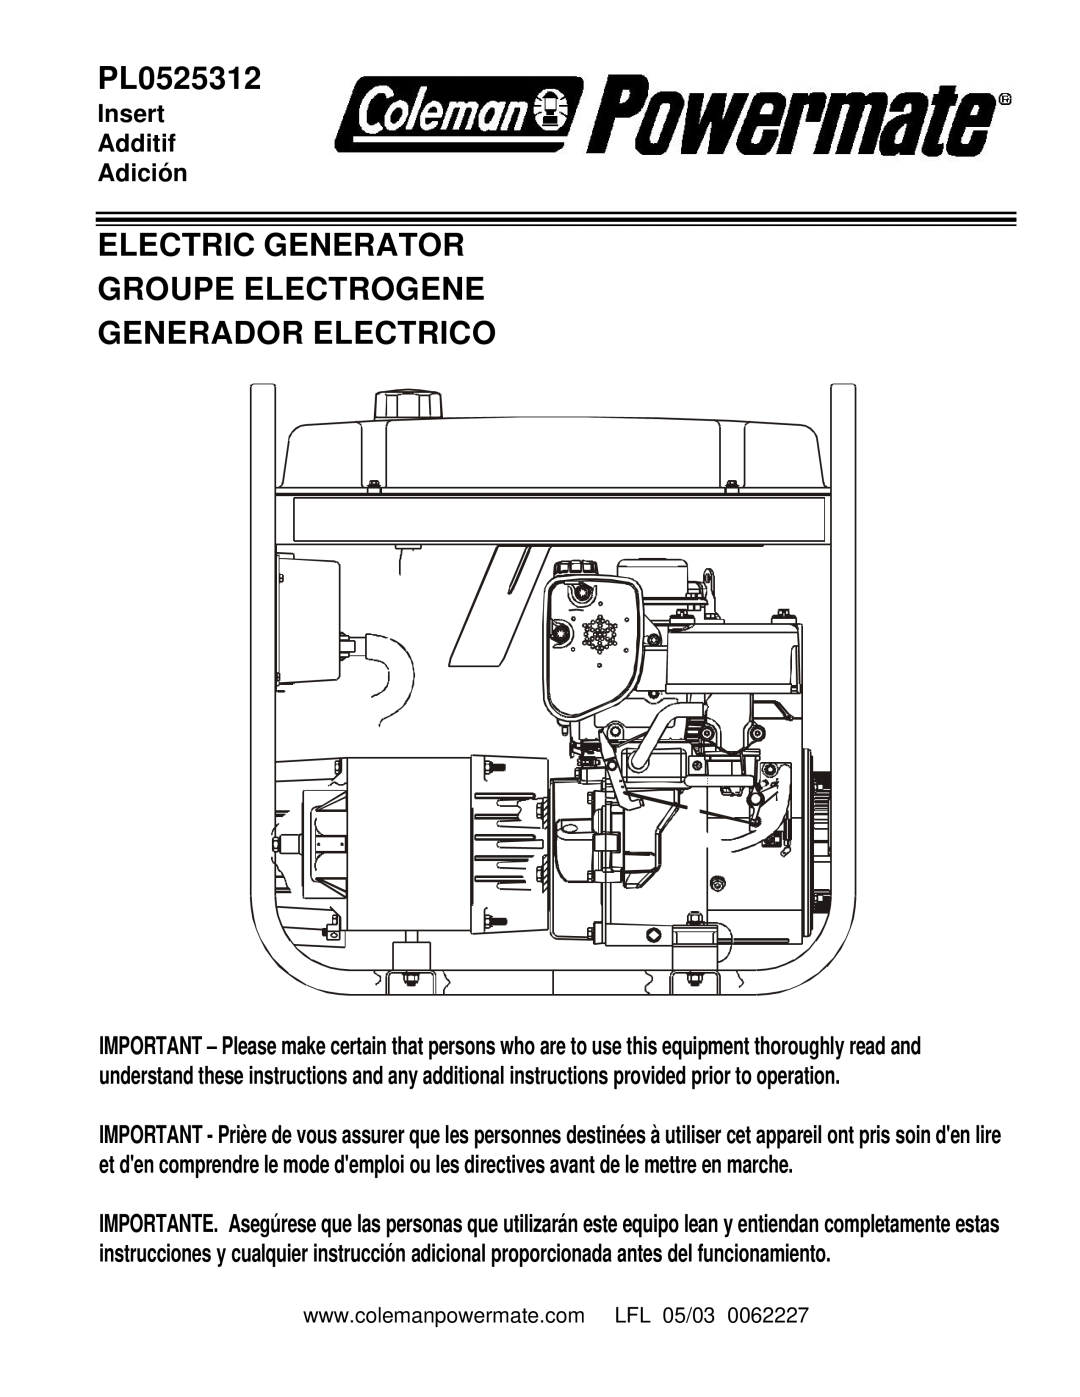 Powermate PL0525312 manual Electric Generator Groupe Electrogene, Generador Electrico, Insert Additif Adición 